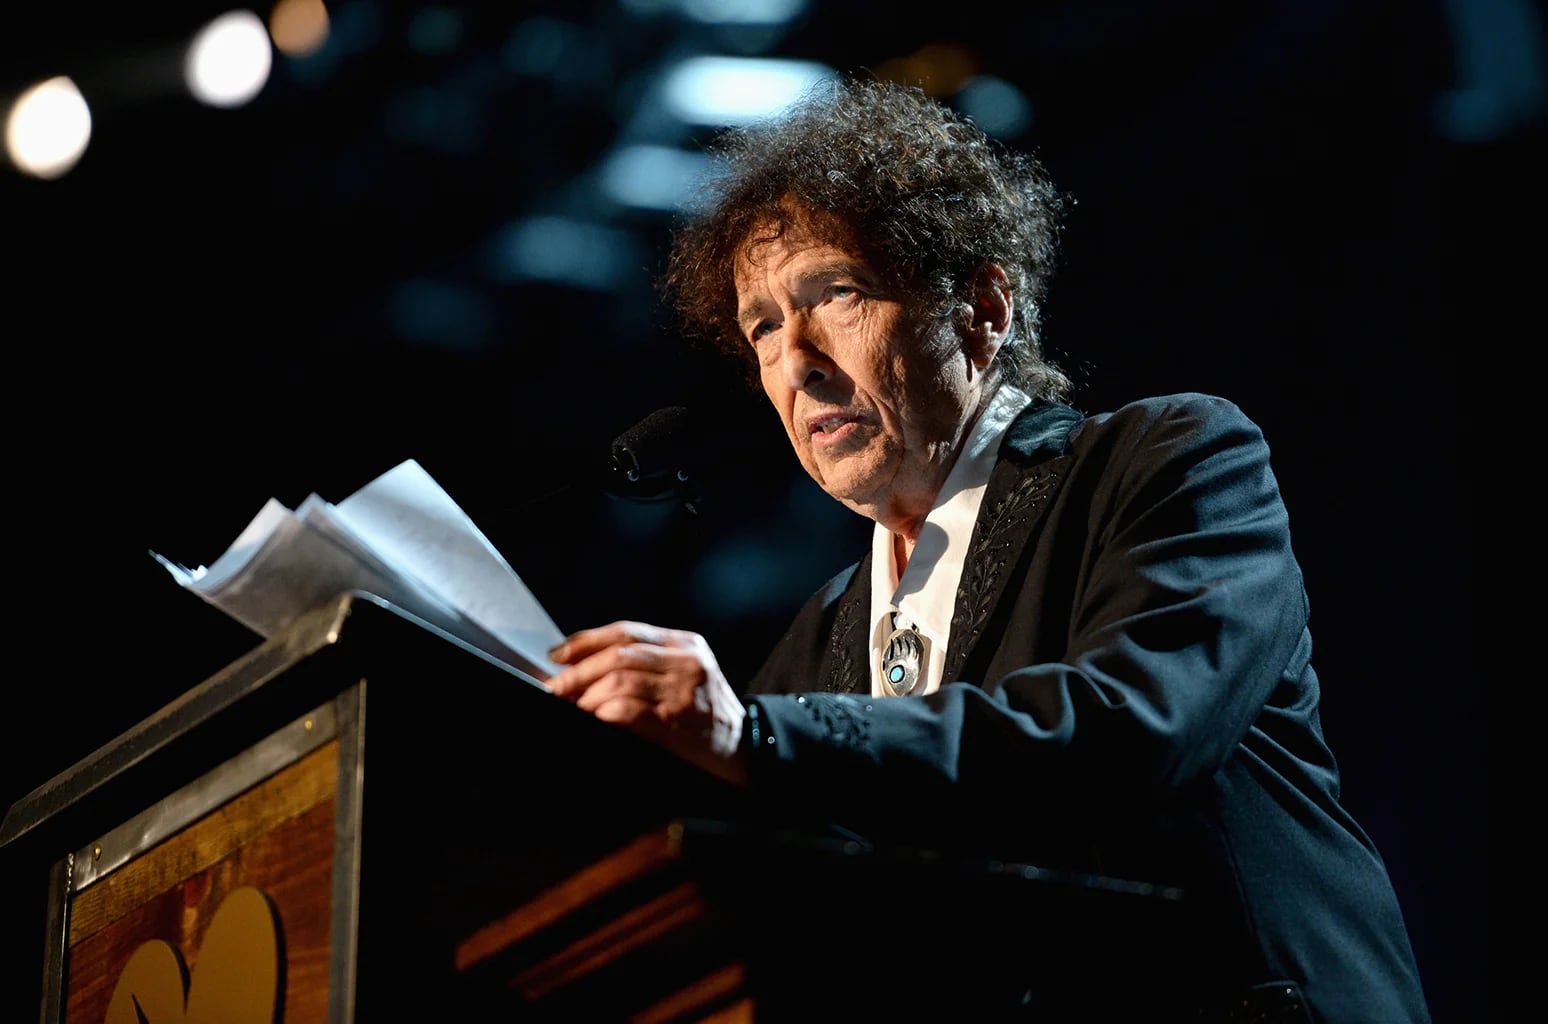 Bob Dylan es un artista conocido por utilizar material de otras personas en sus canciones, asegura la publicación